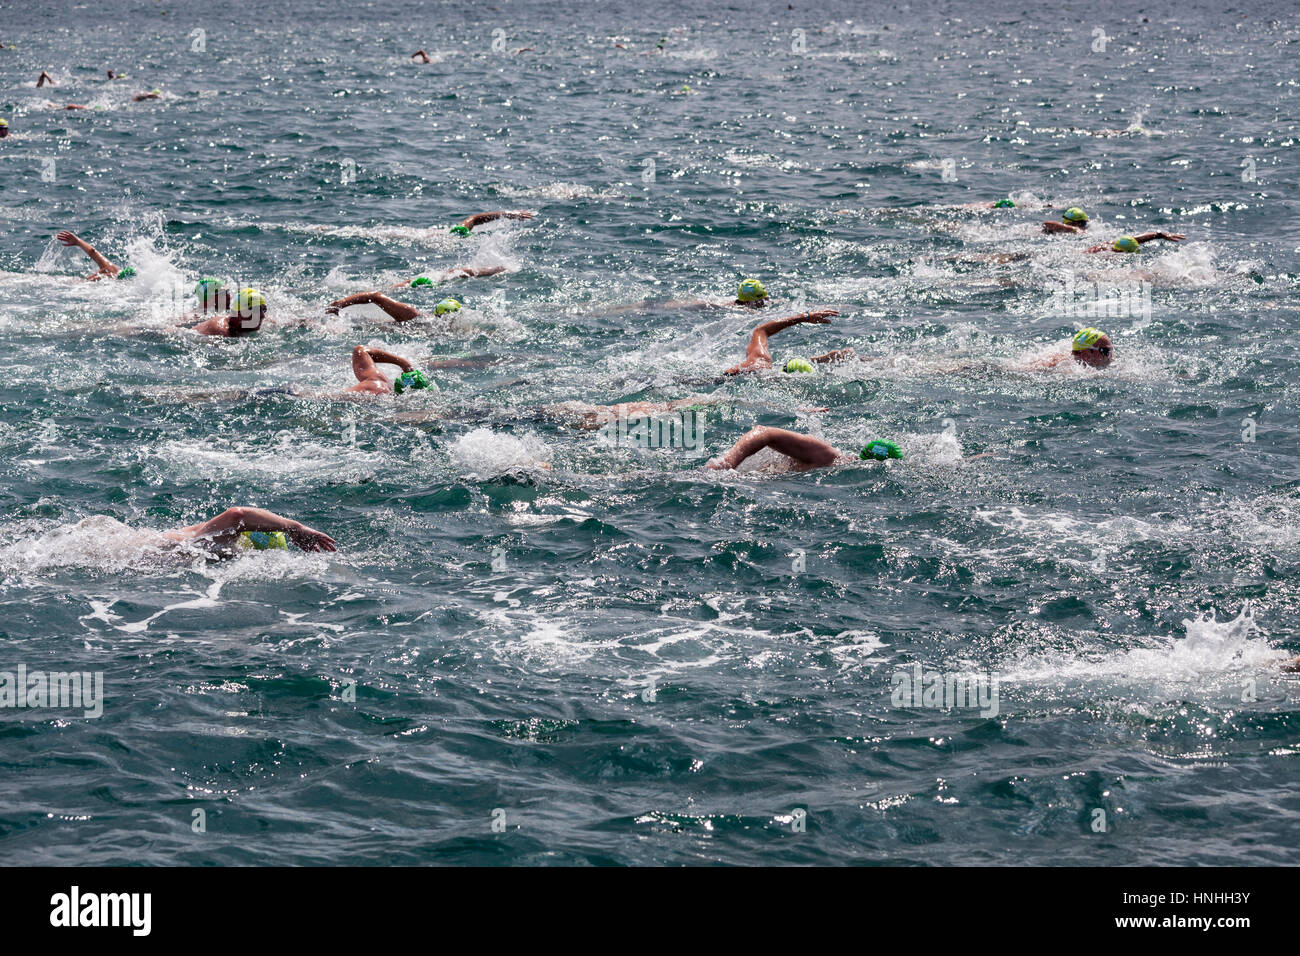 Istanbul, 20. Juli 2014 - die traditionelle 26. Samsung Bosporus Cross Continental Wettschwimmen, mit 1729 Sportler aus 45 Ländern fand vergangenen 21. Juli - berichteten die örtlichen Medien. Stockfoto